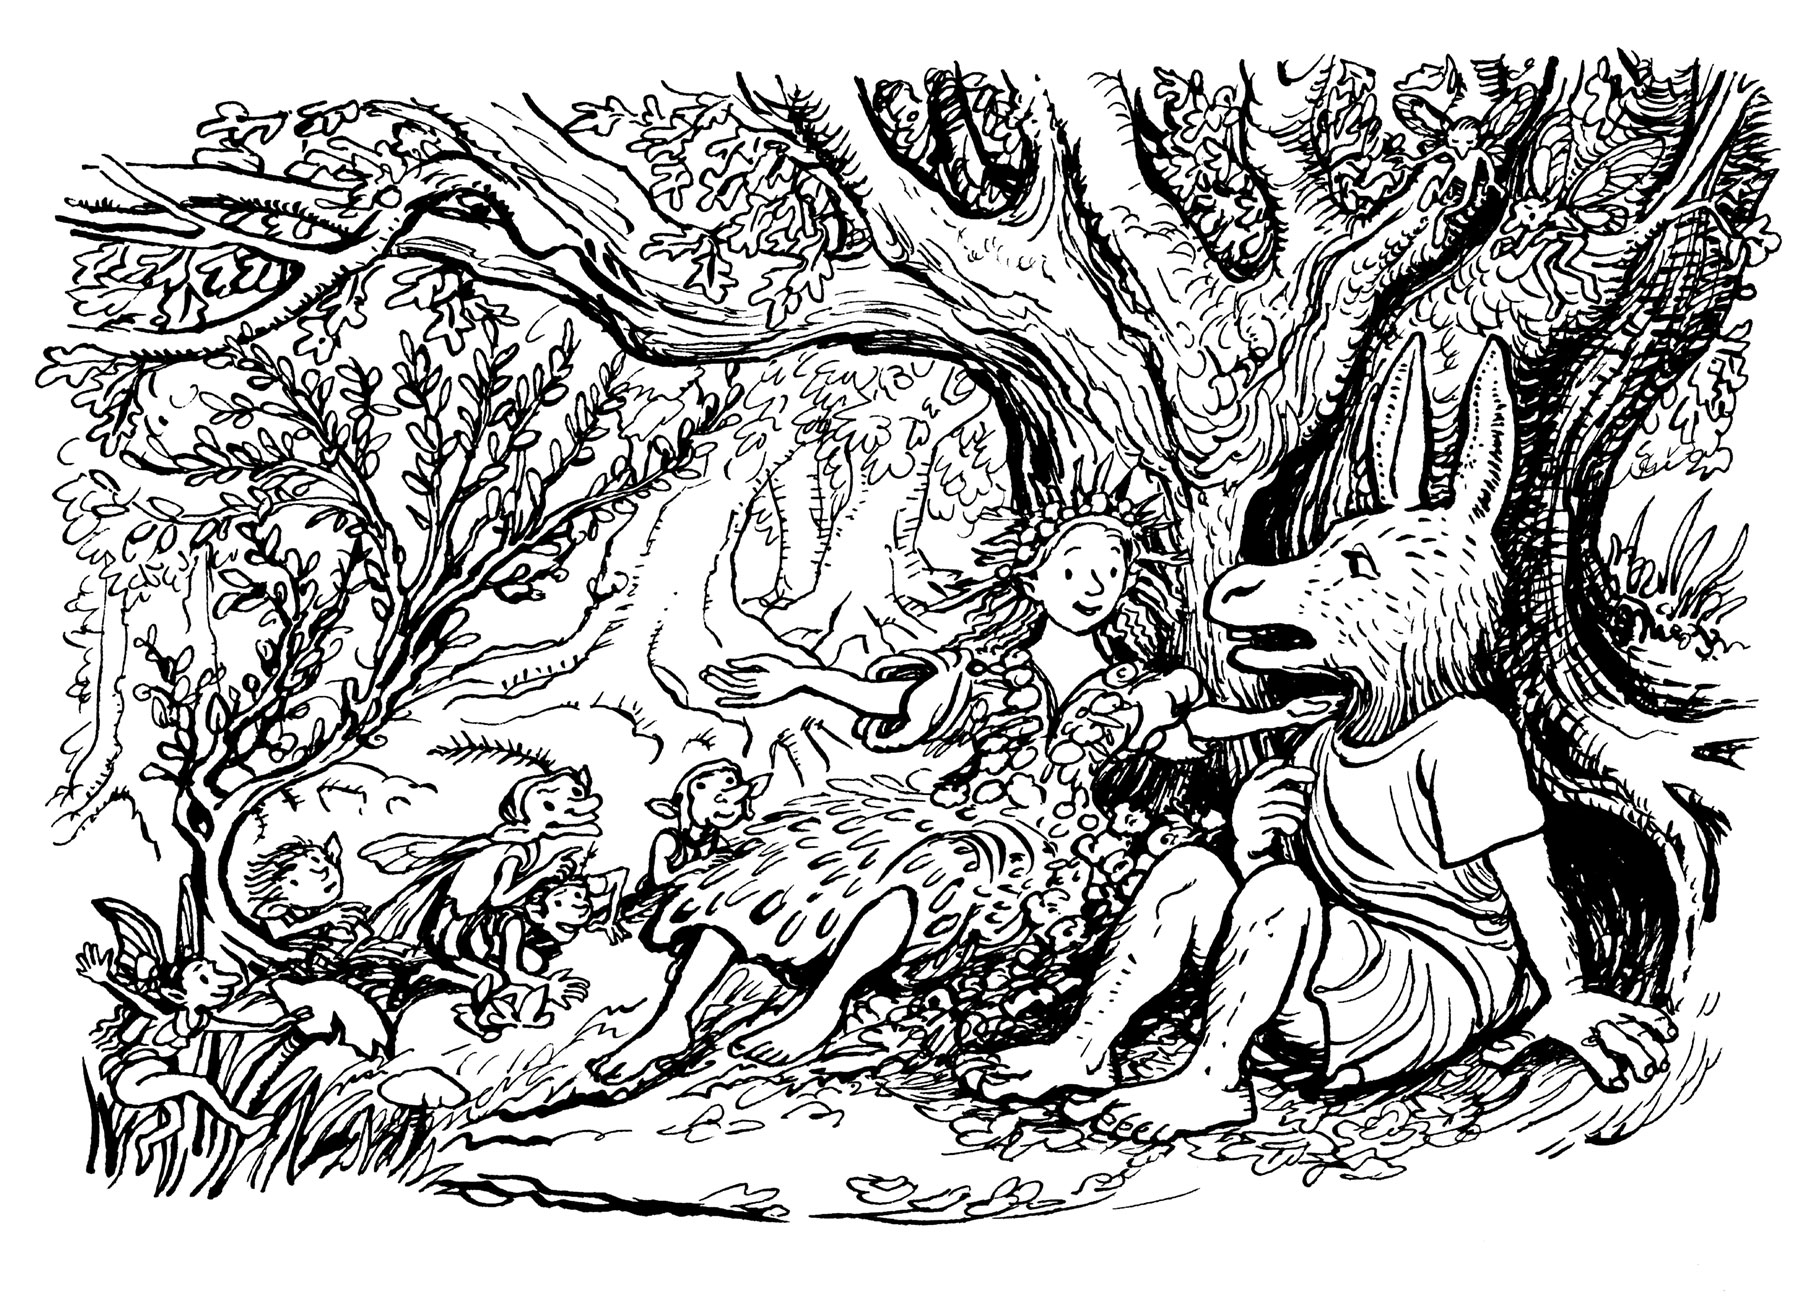 A Midsummer Night's Dream illustration by John Shelley